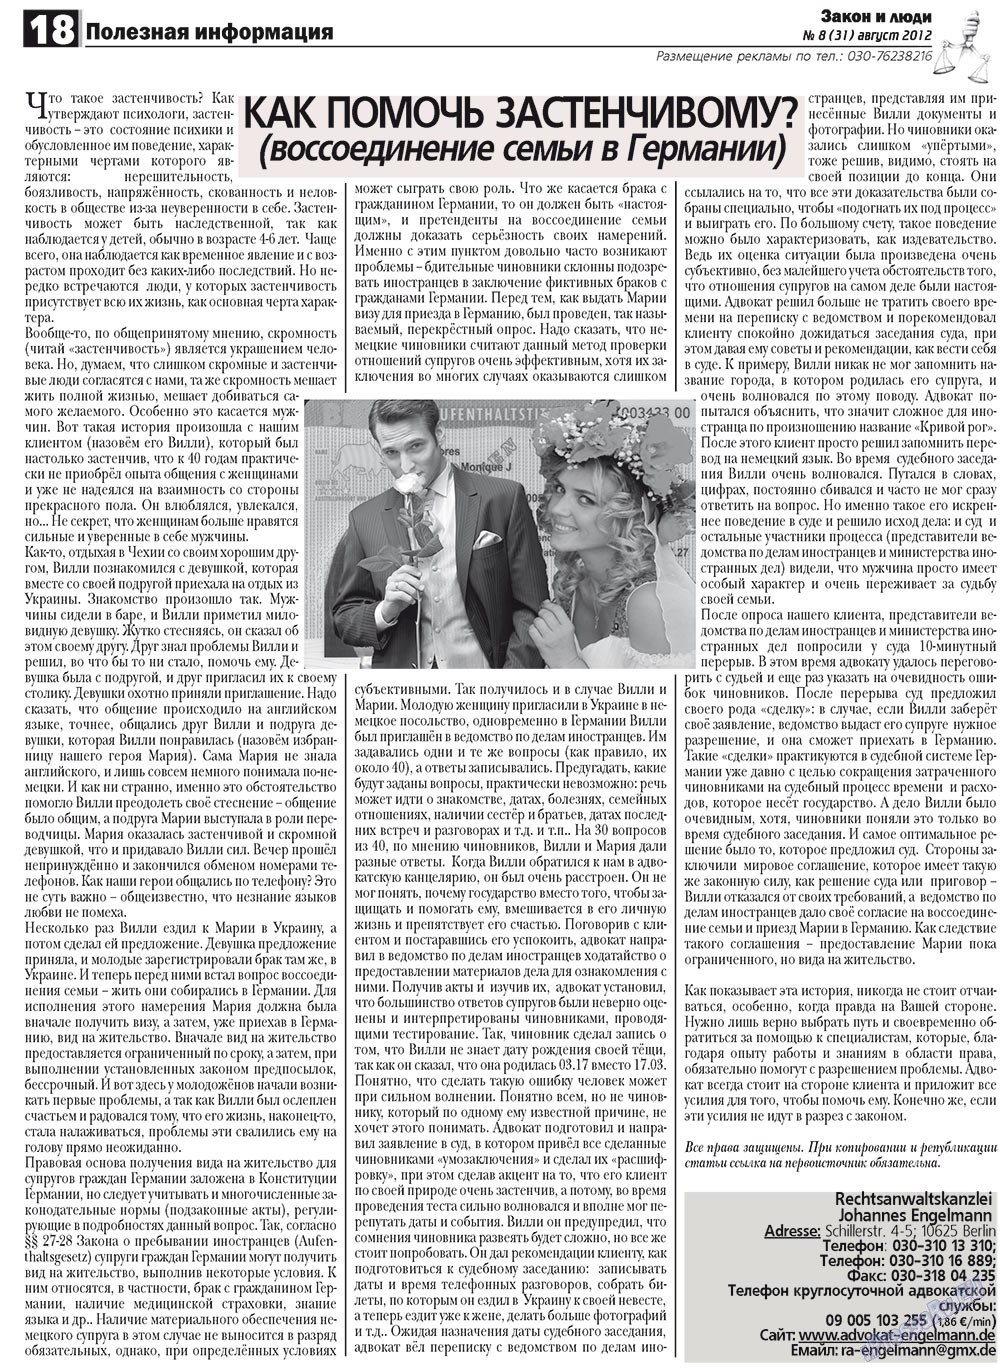 Закон и люди (газета). 2012 год, номер 8, стр. 18